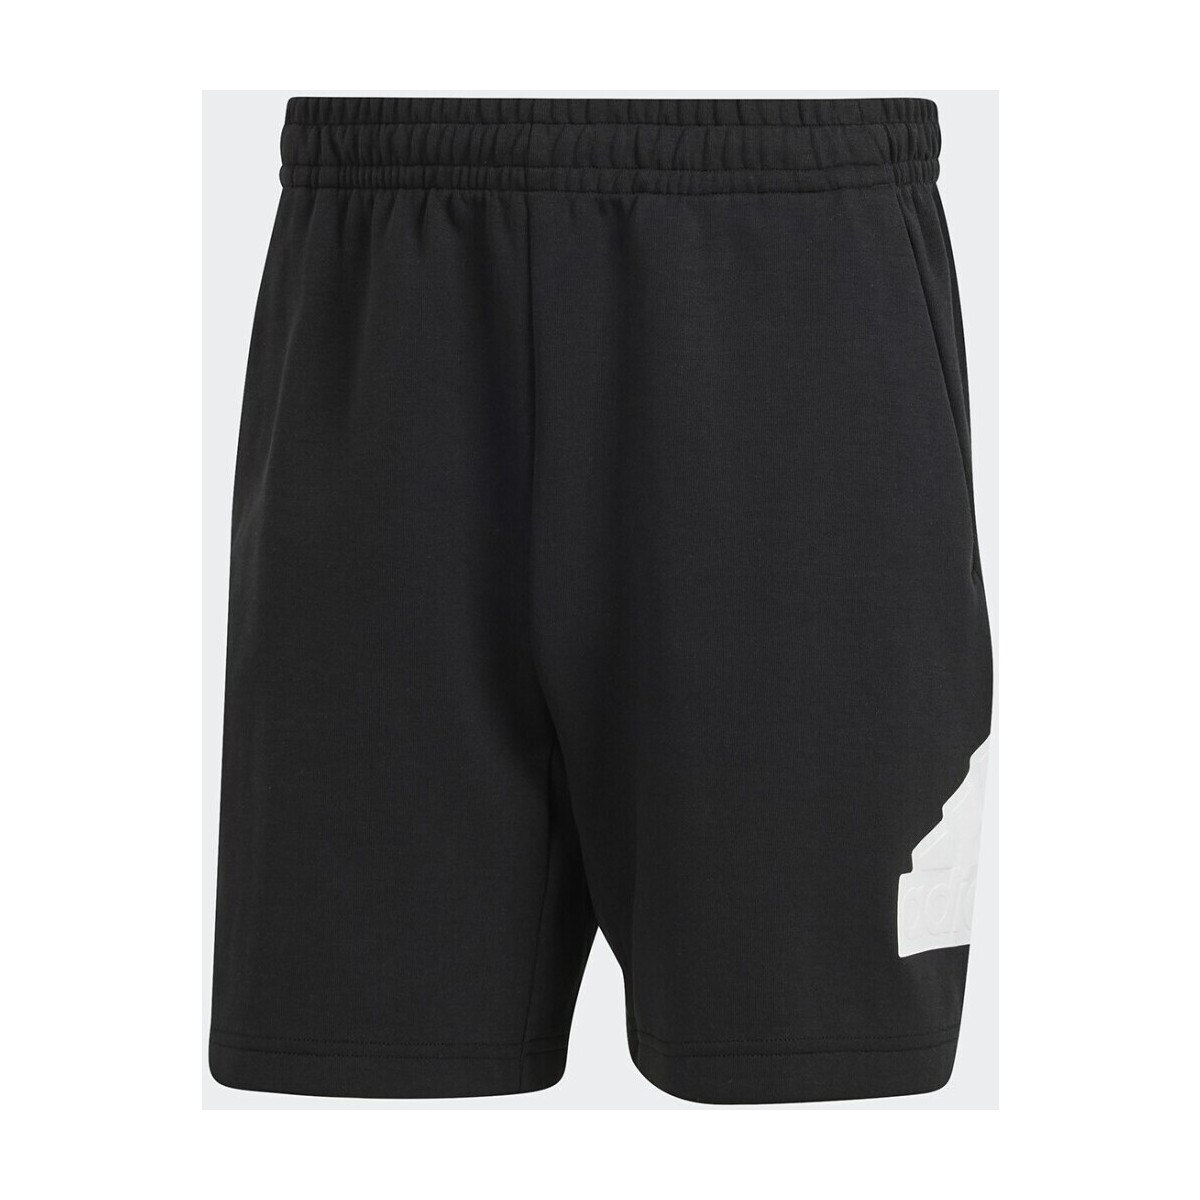 Kleidung Herren Shorts / Bermudas adidas Originals  Schwarz